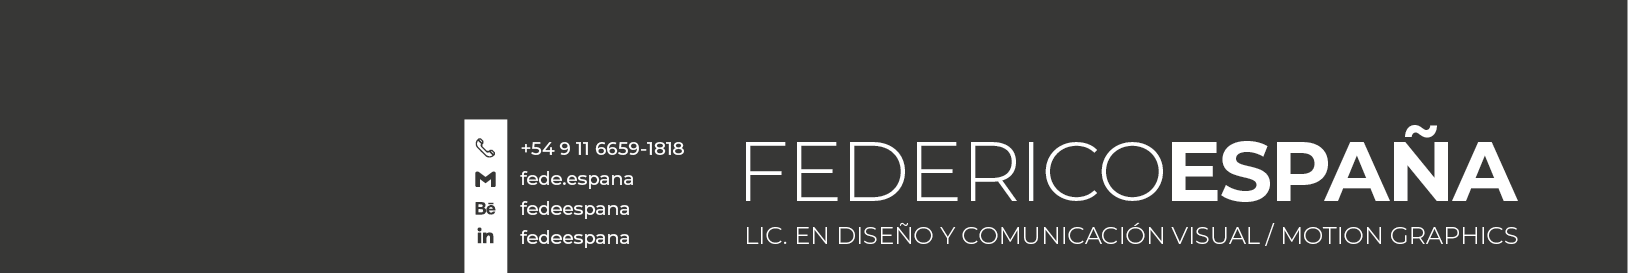 Banner de perfil de Federico España